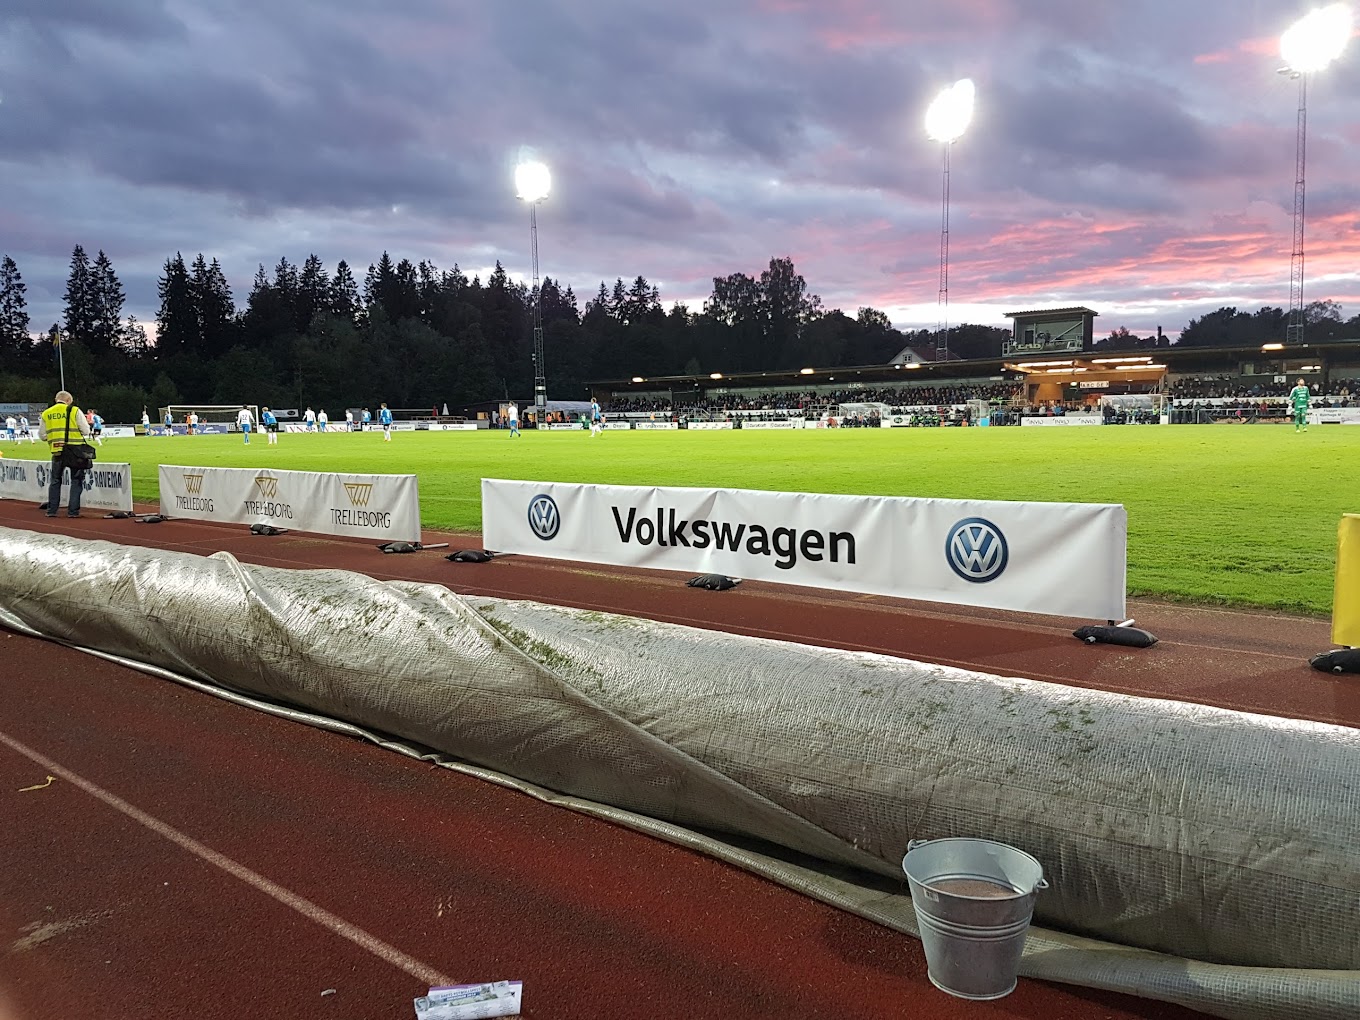 สนามแข่ง : Finnvedsvallen (IFK Värnamo)